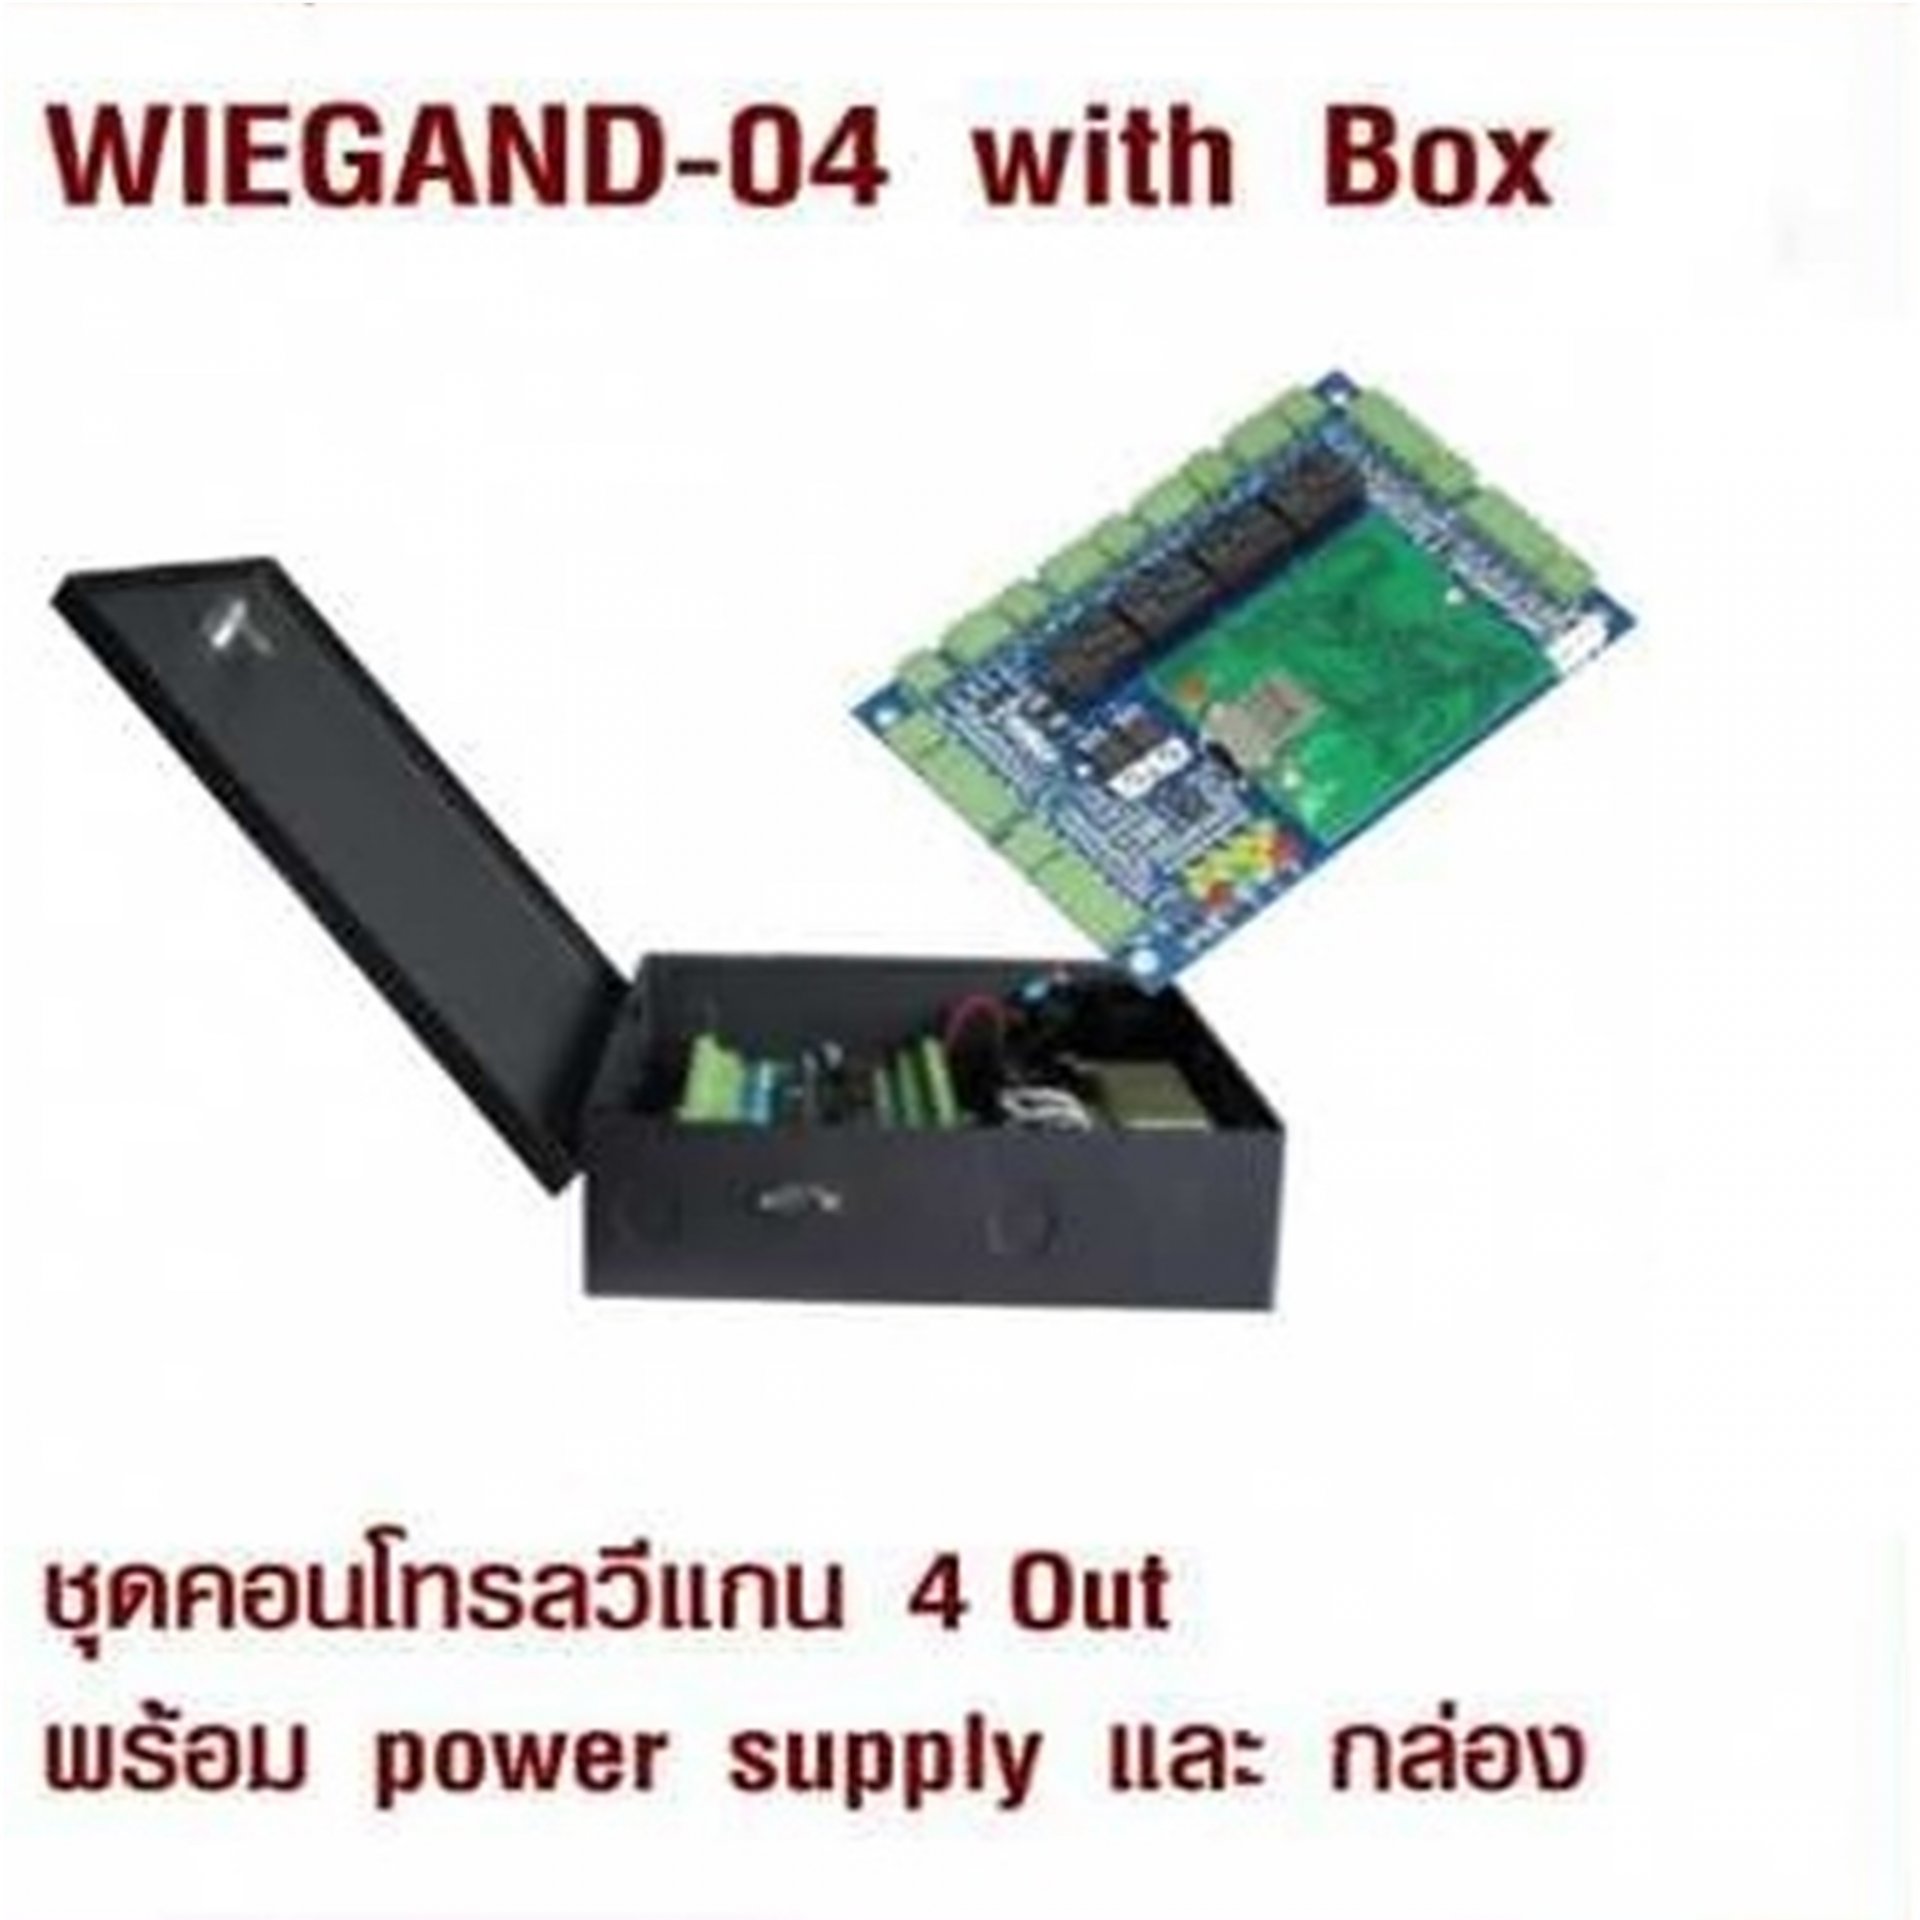 WIEGAND-04 with Box ชุดคอนโทรลวีแกน 4 Out